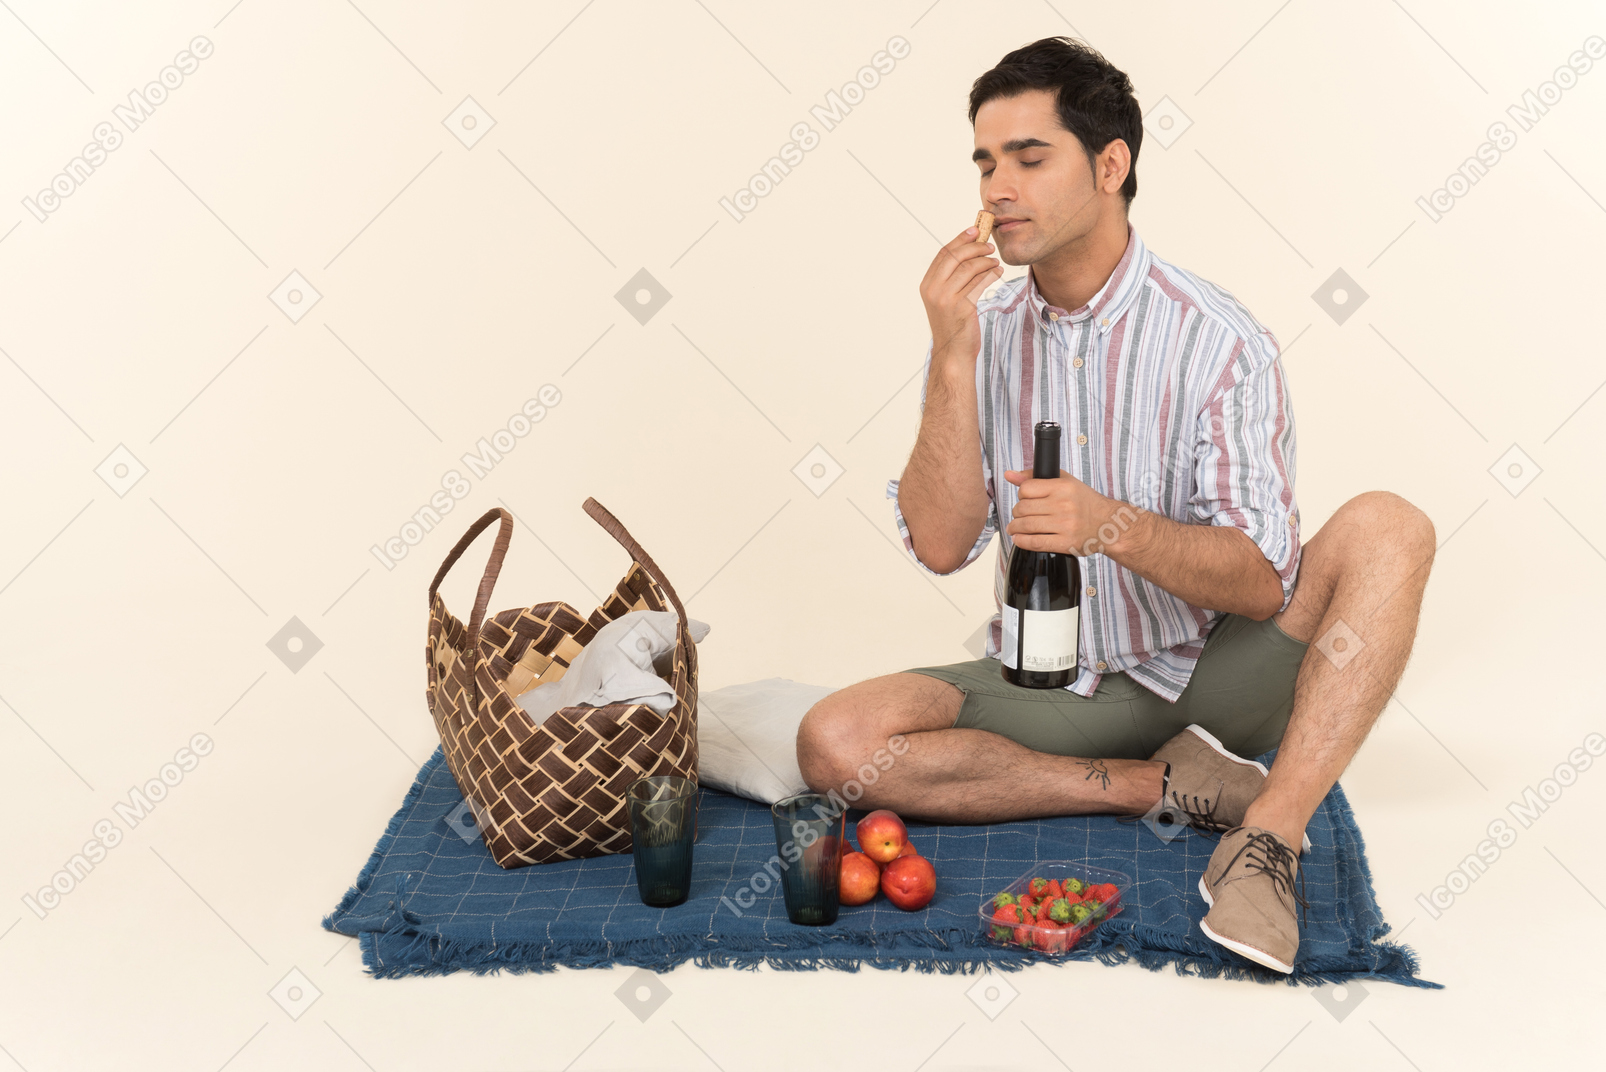 Junger kaukasischer kerl, der picknick hat und frucht riecht